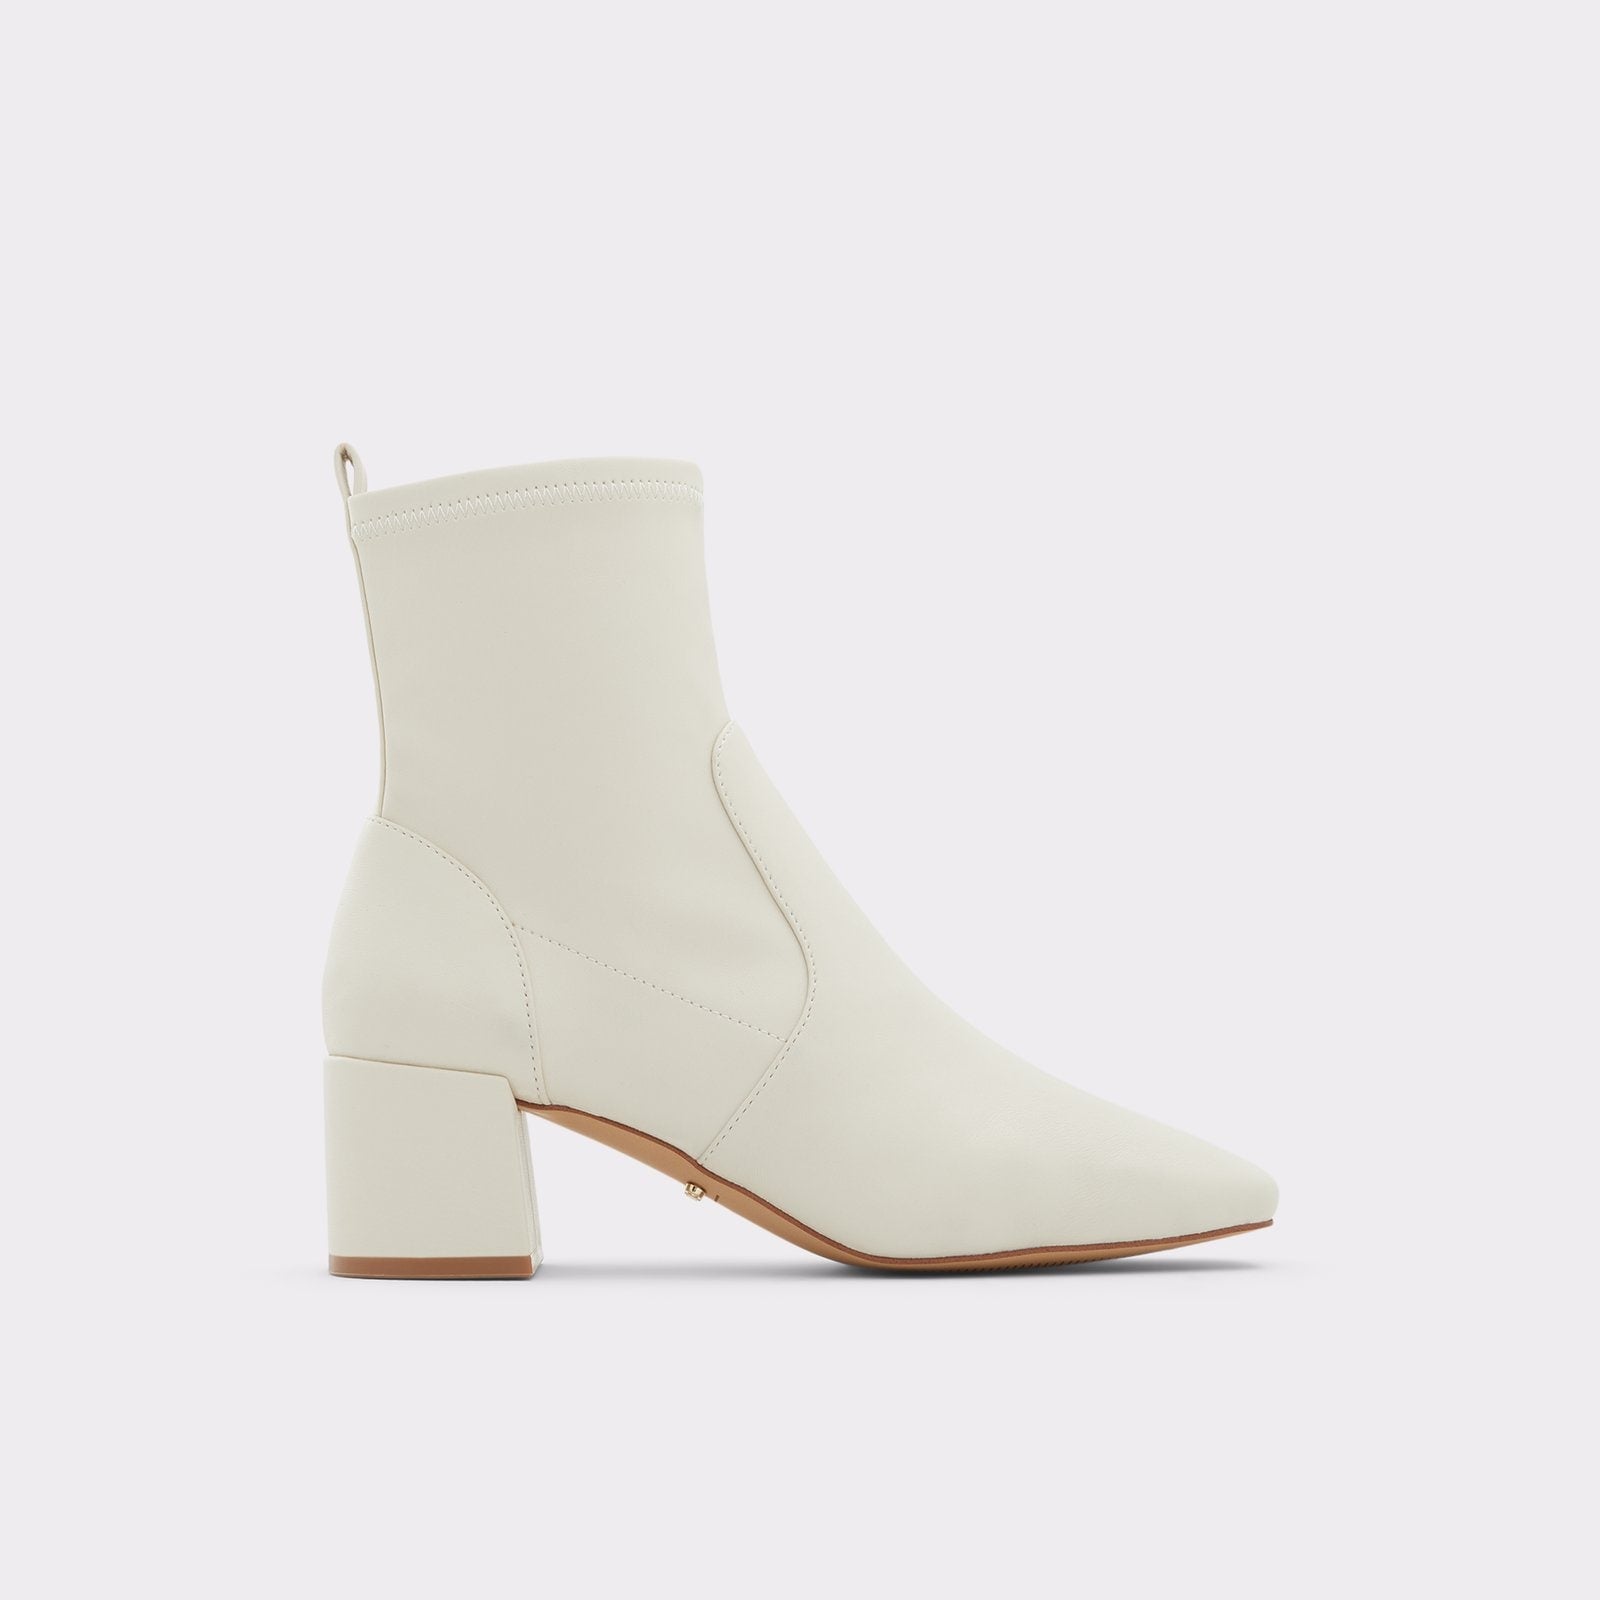 Aldo Women’s Heeled Ankle Boots Ibiraswen (White)